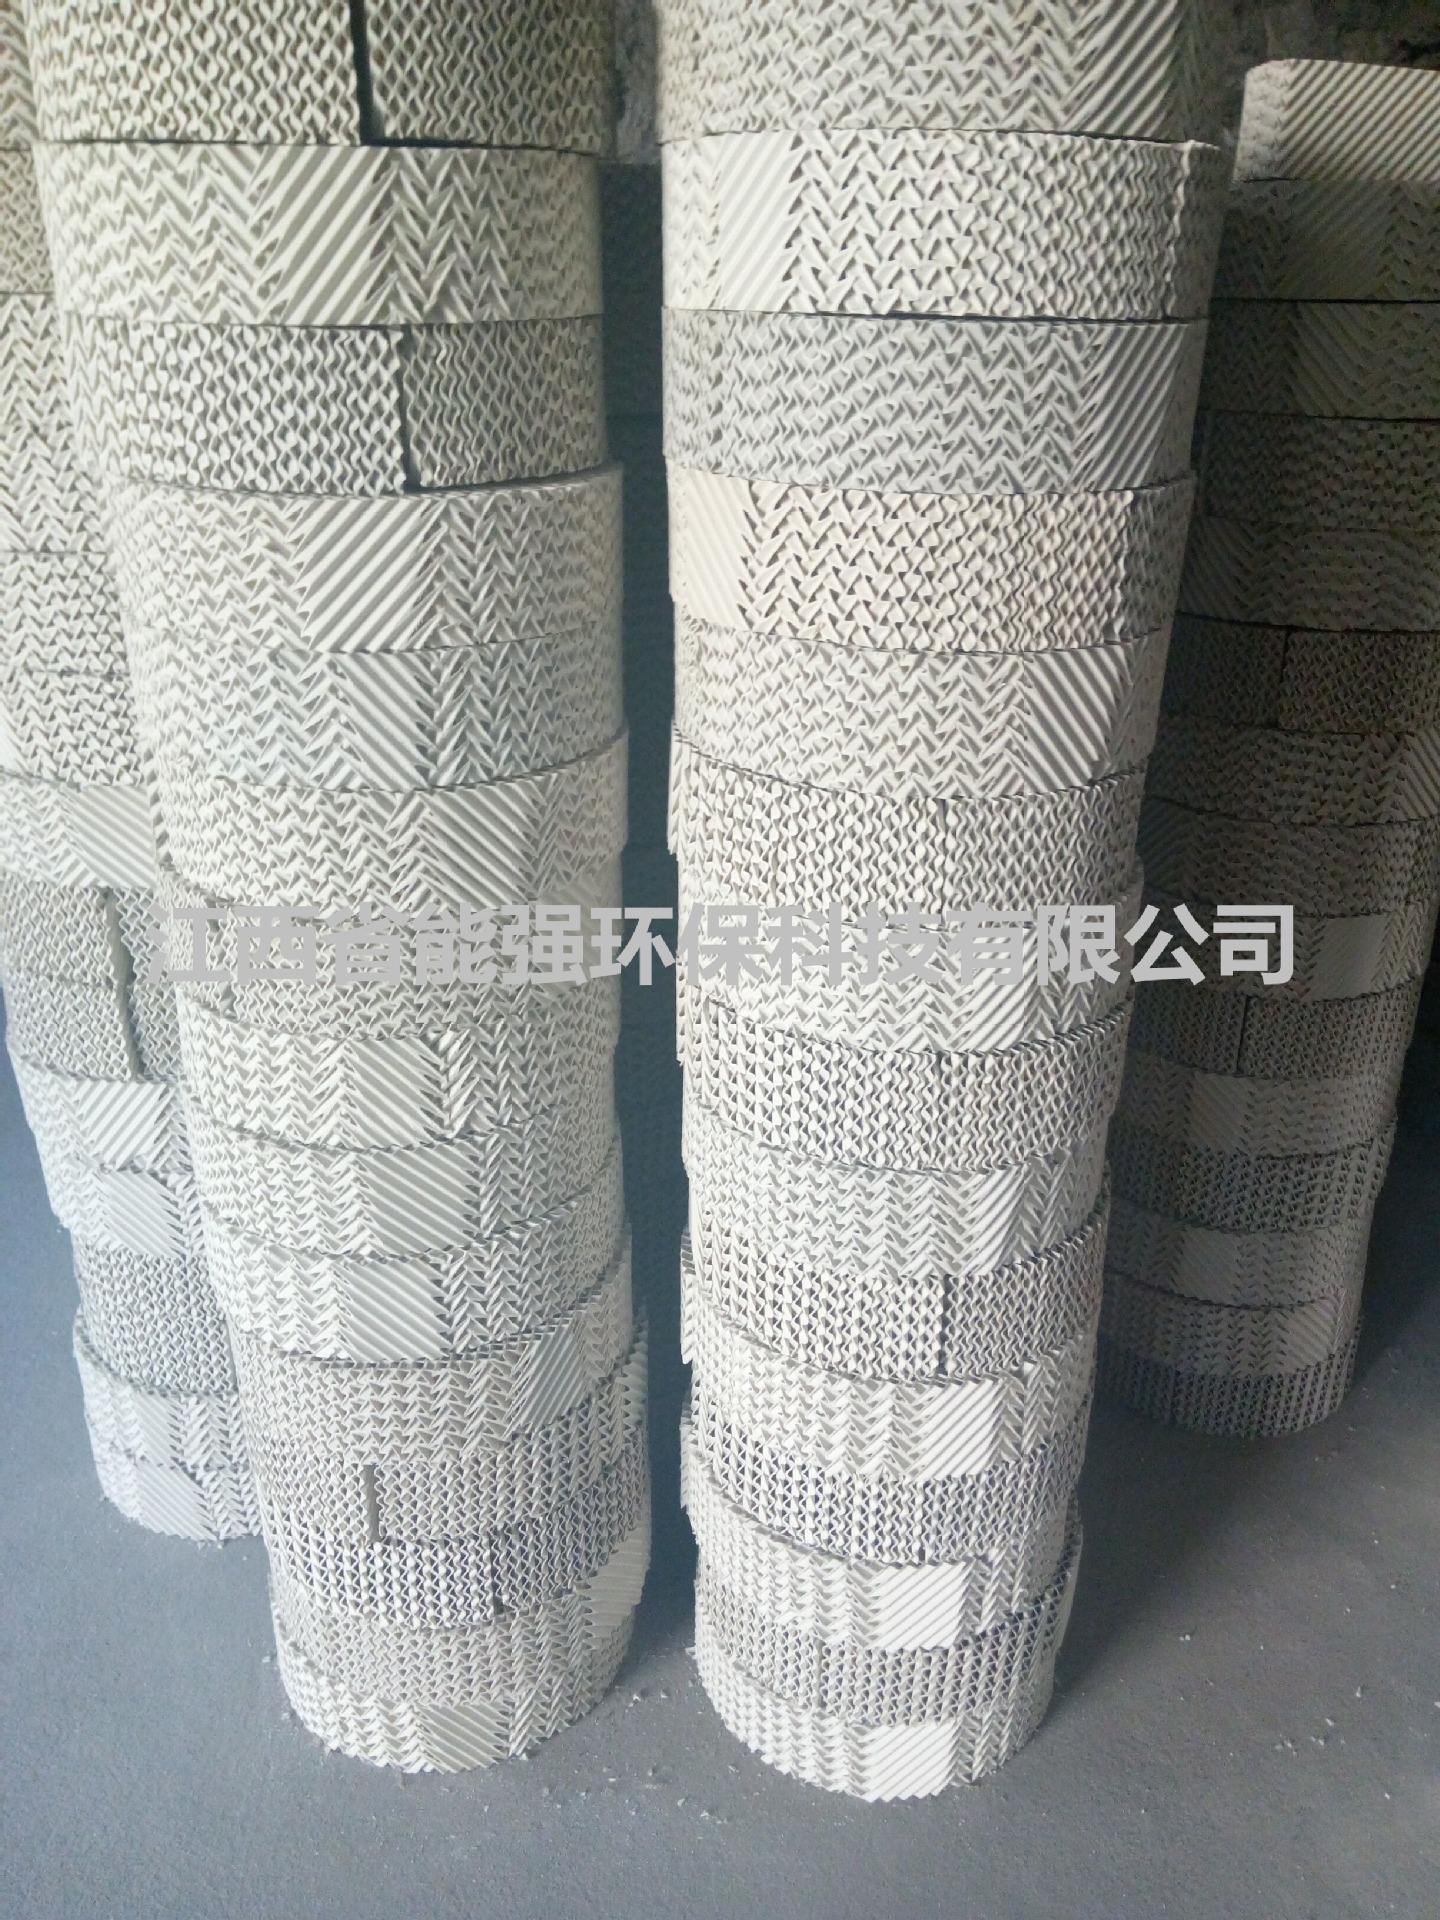 厂家出售陶瓷填料 陶瓷波纹填料 化工填料 吸收塔填料 价格优惠示例图6